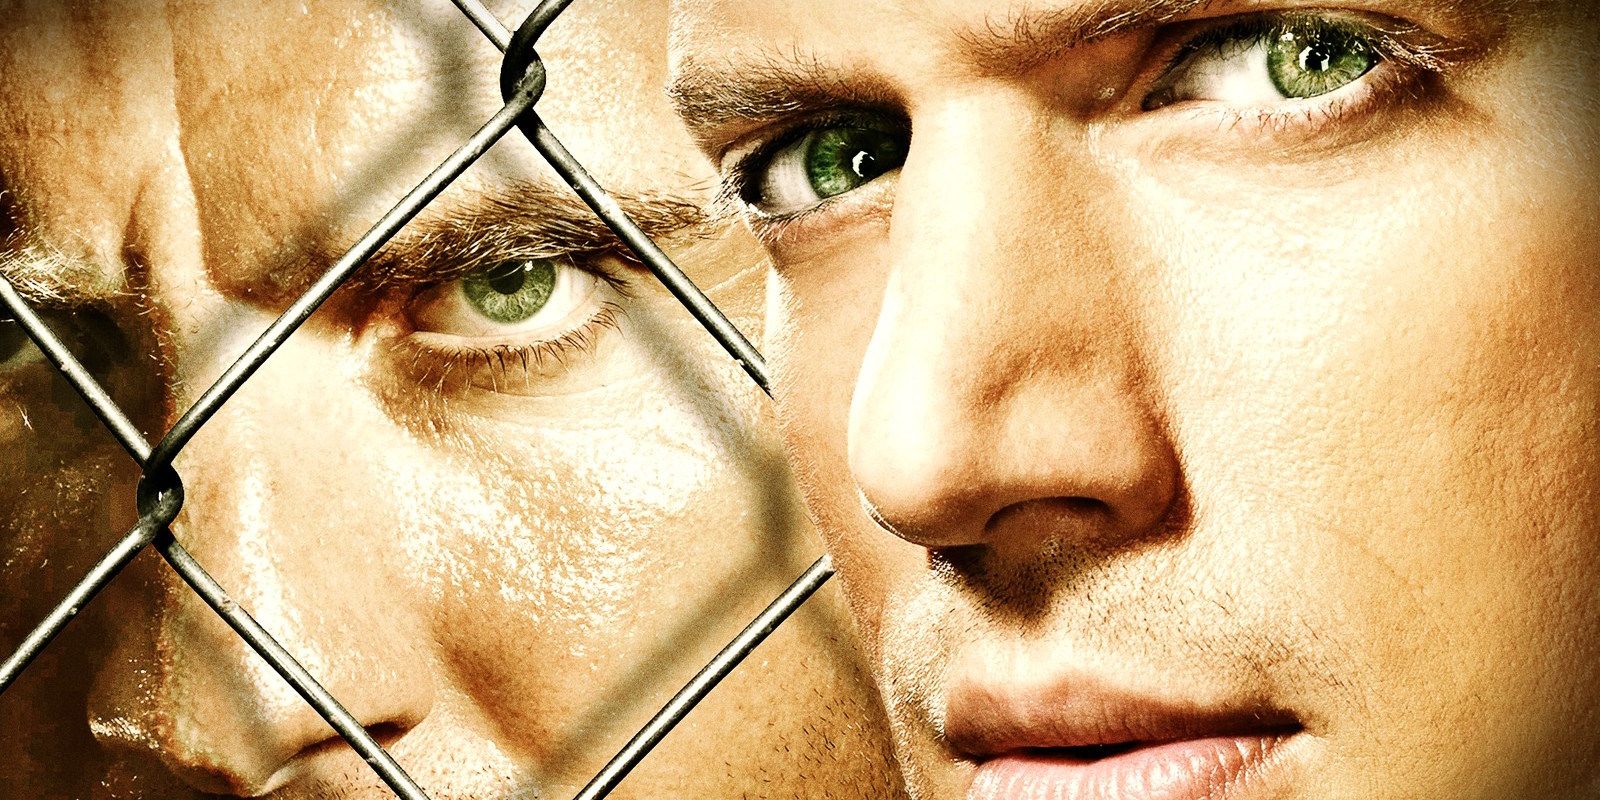 Prison Break season 5 sneak peek